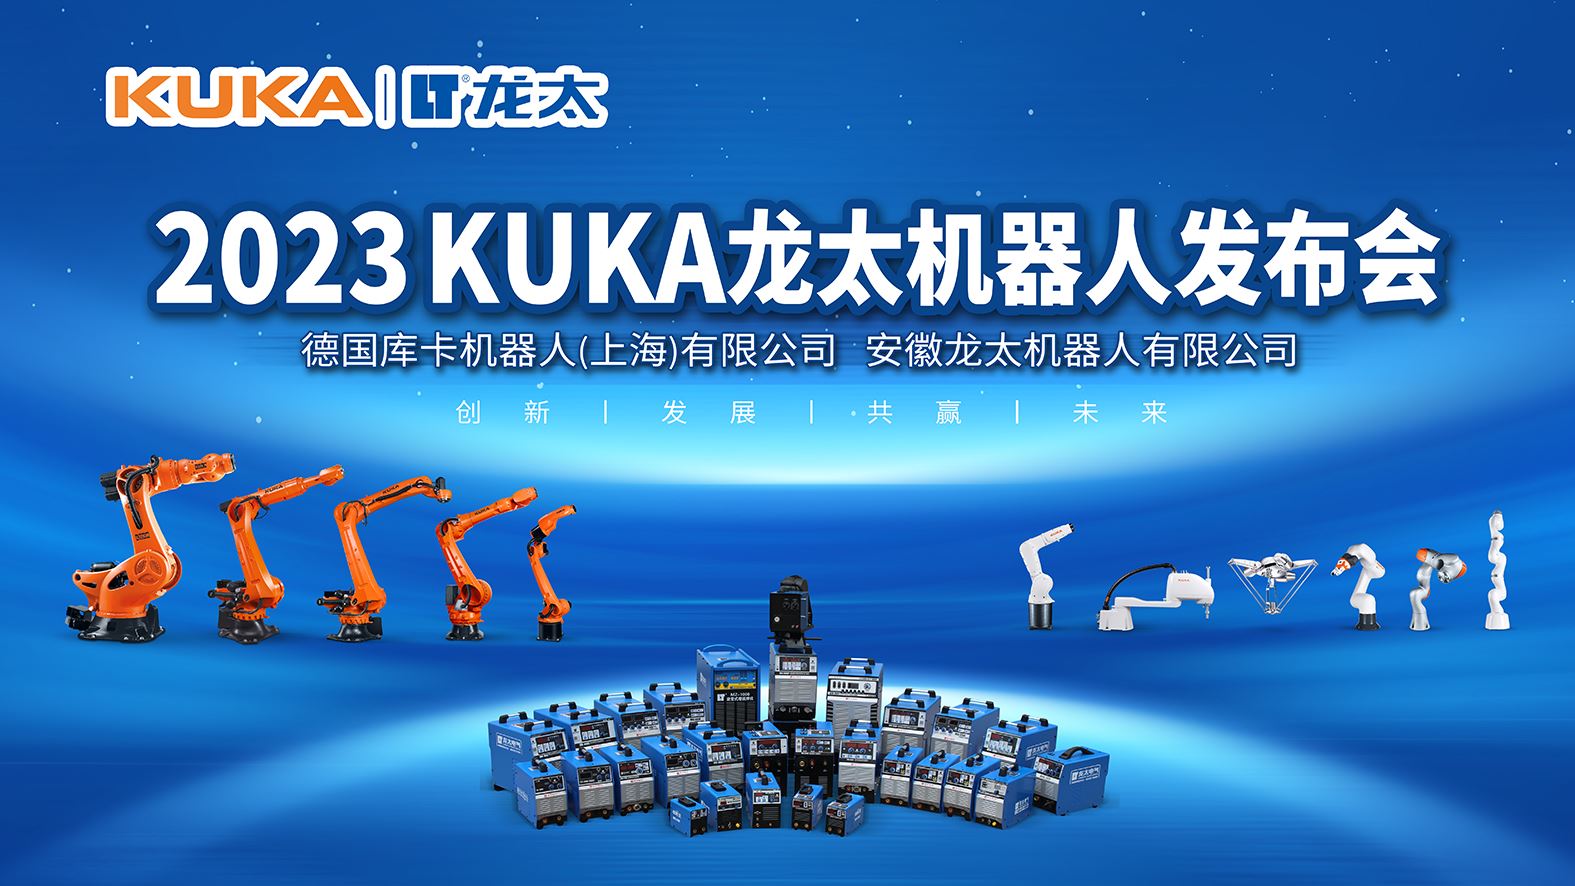 澳门网上电玩城KUKA机器人战略合作发布会完成